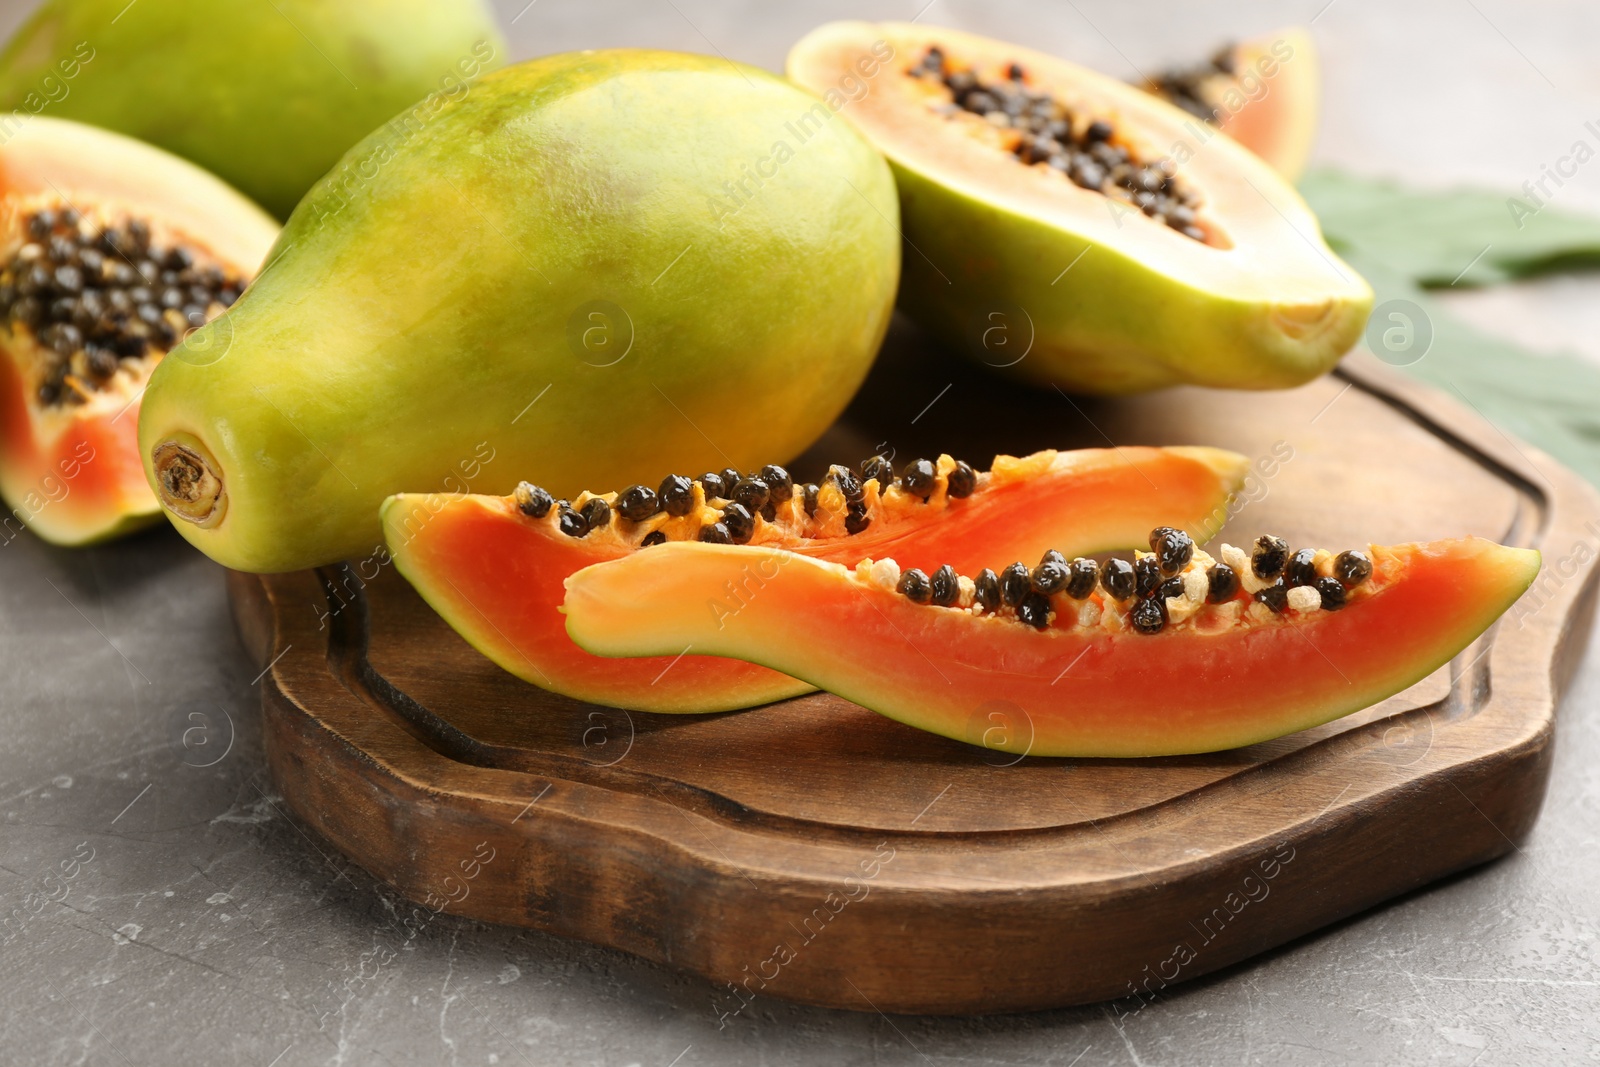 Photo of Fresh ripe papaya fruits on grey table